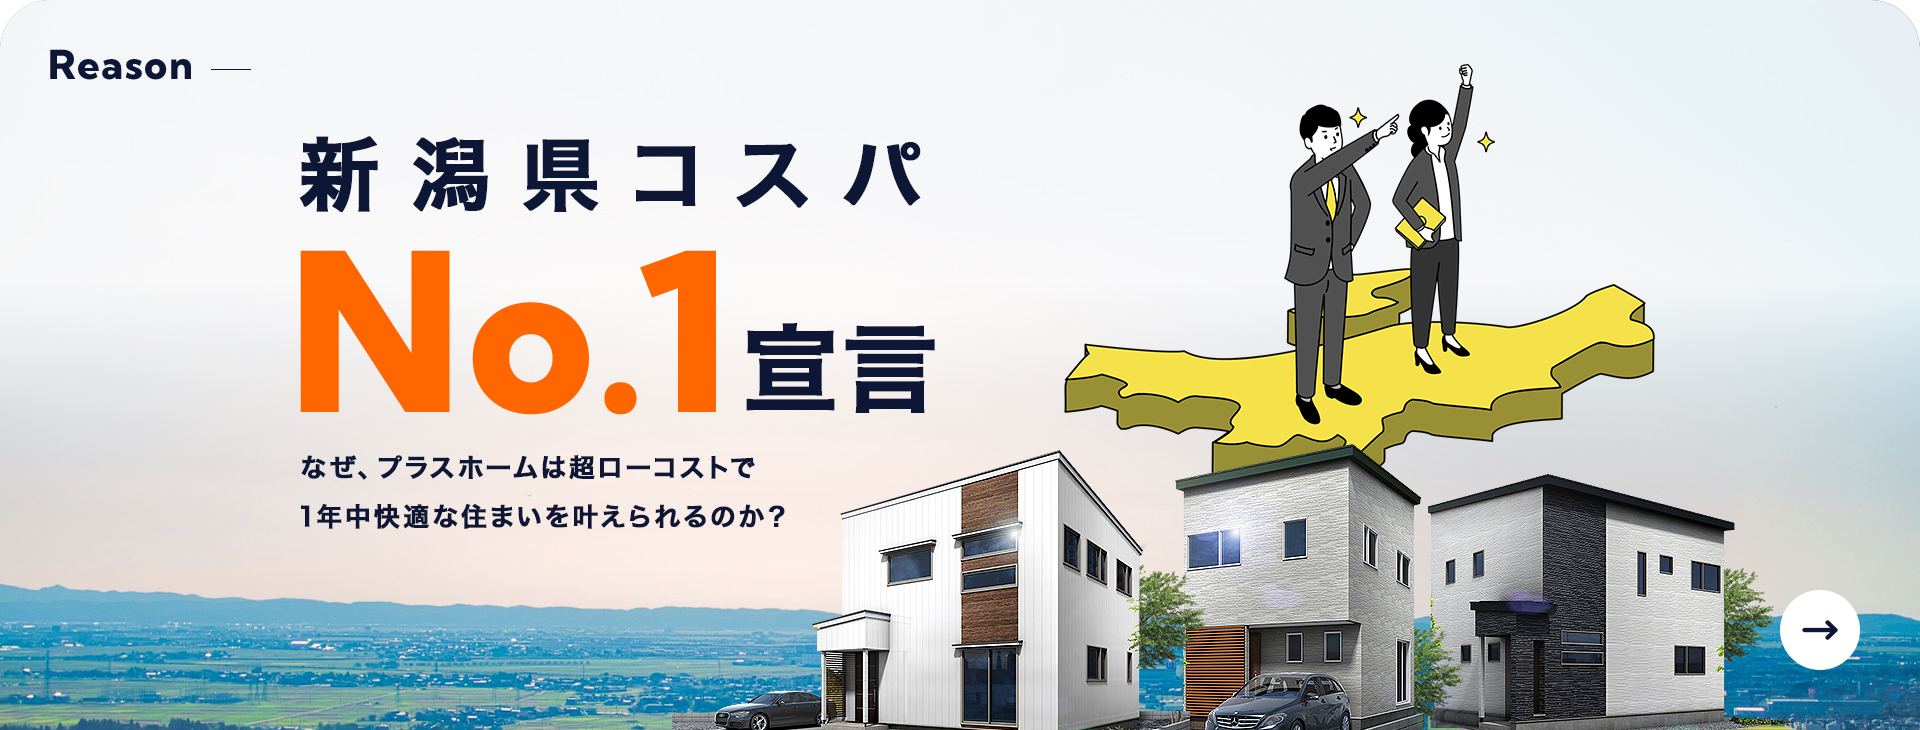 Reason 新潟県コスパNo.1宣言 なぜ、プラスホームは超ローコストで1年中快適な住まいを叶えられるのか？